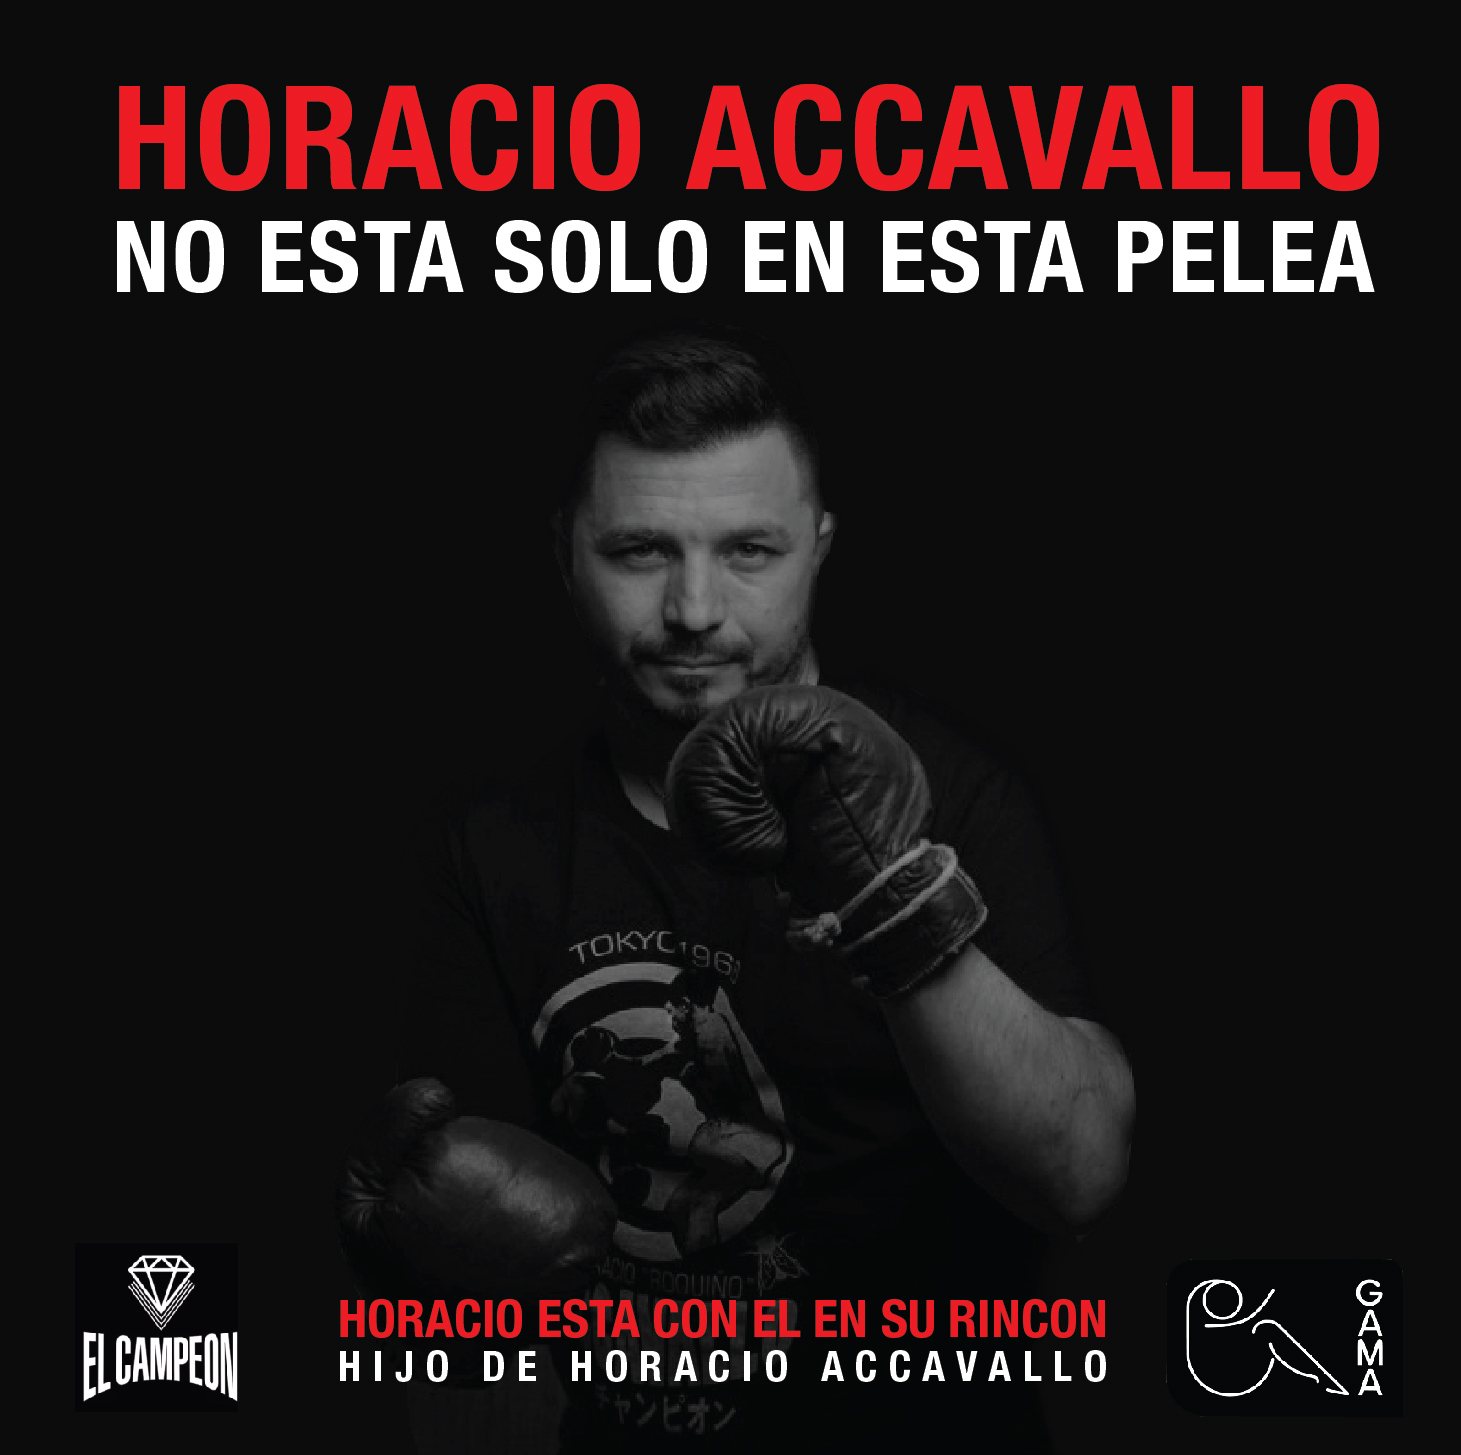 El banner de la campaña liderada por el hijo de Horacio Accavallo junto a Gama ONG